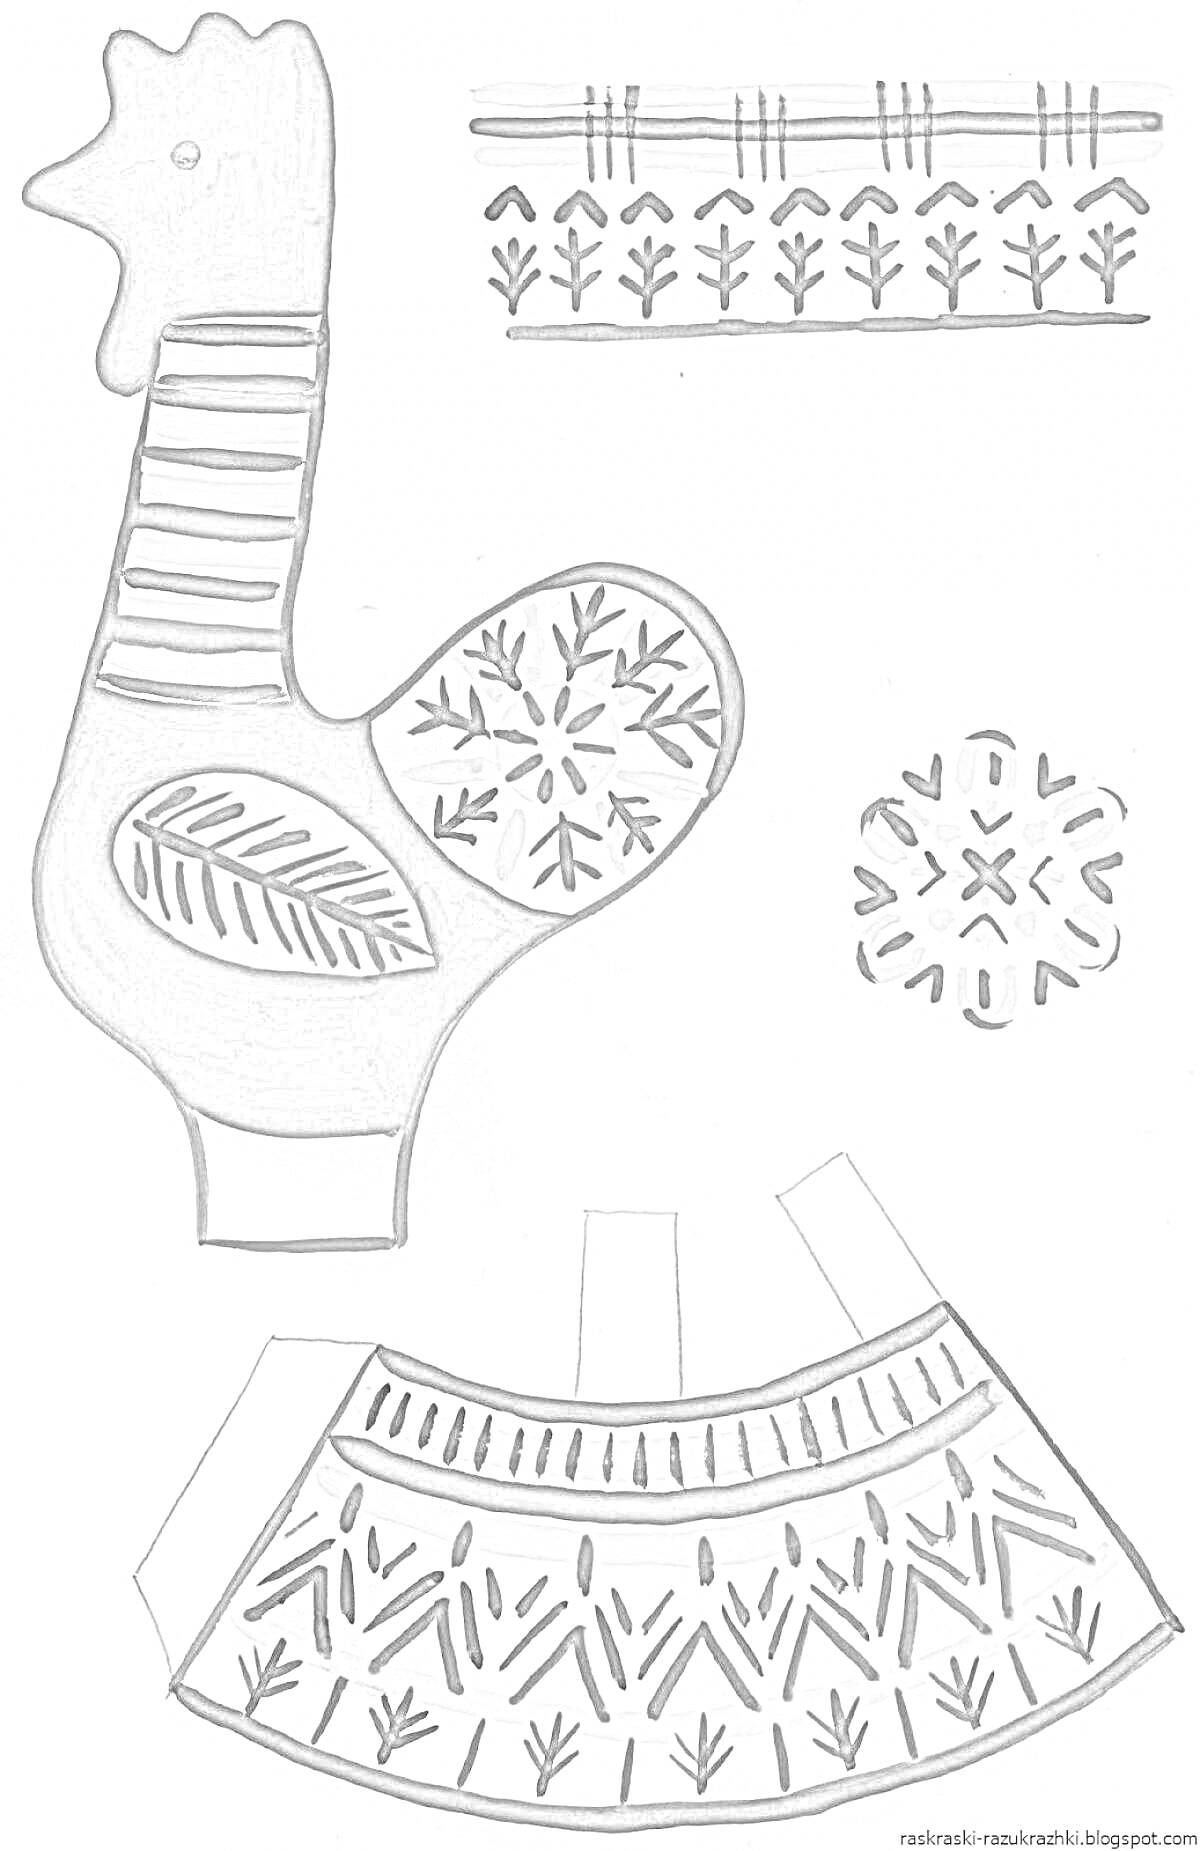 Раскраска Филимоновская игрушка петушок с орнаментом, круглый элементы и детали одежды